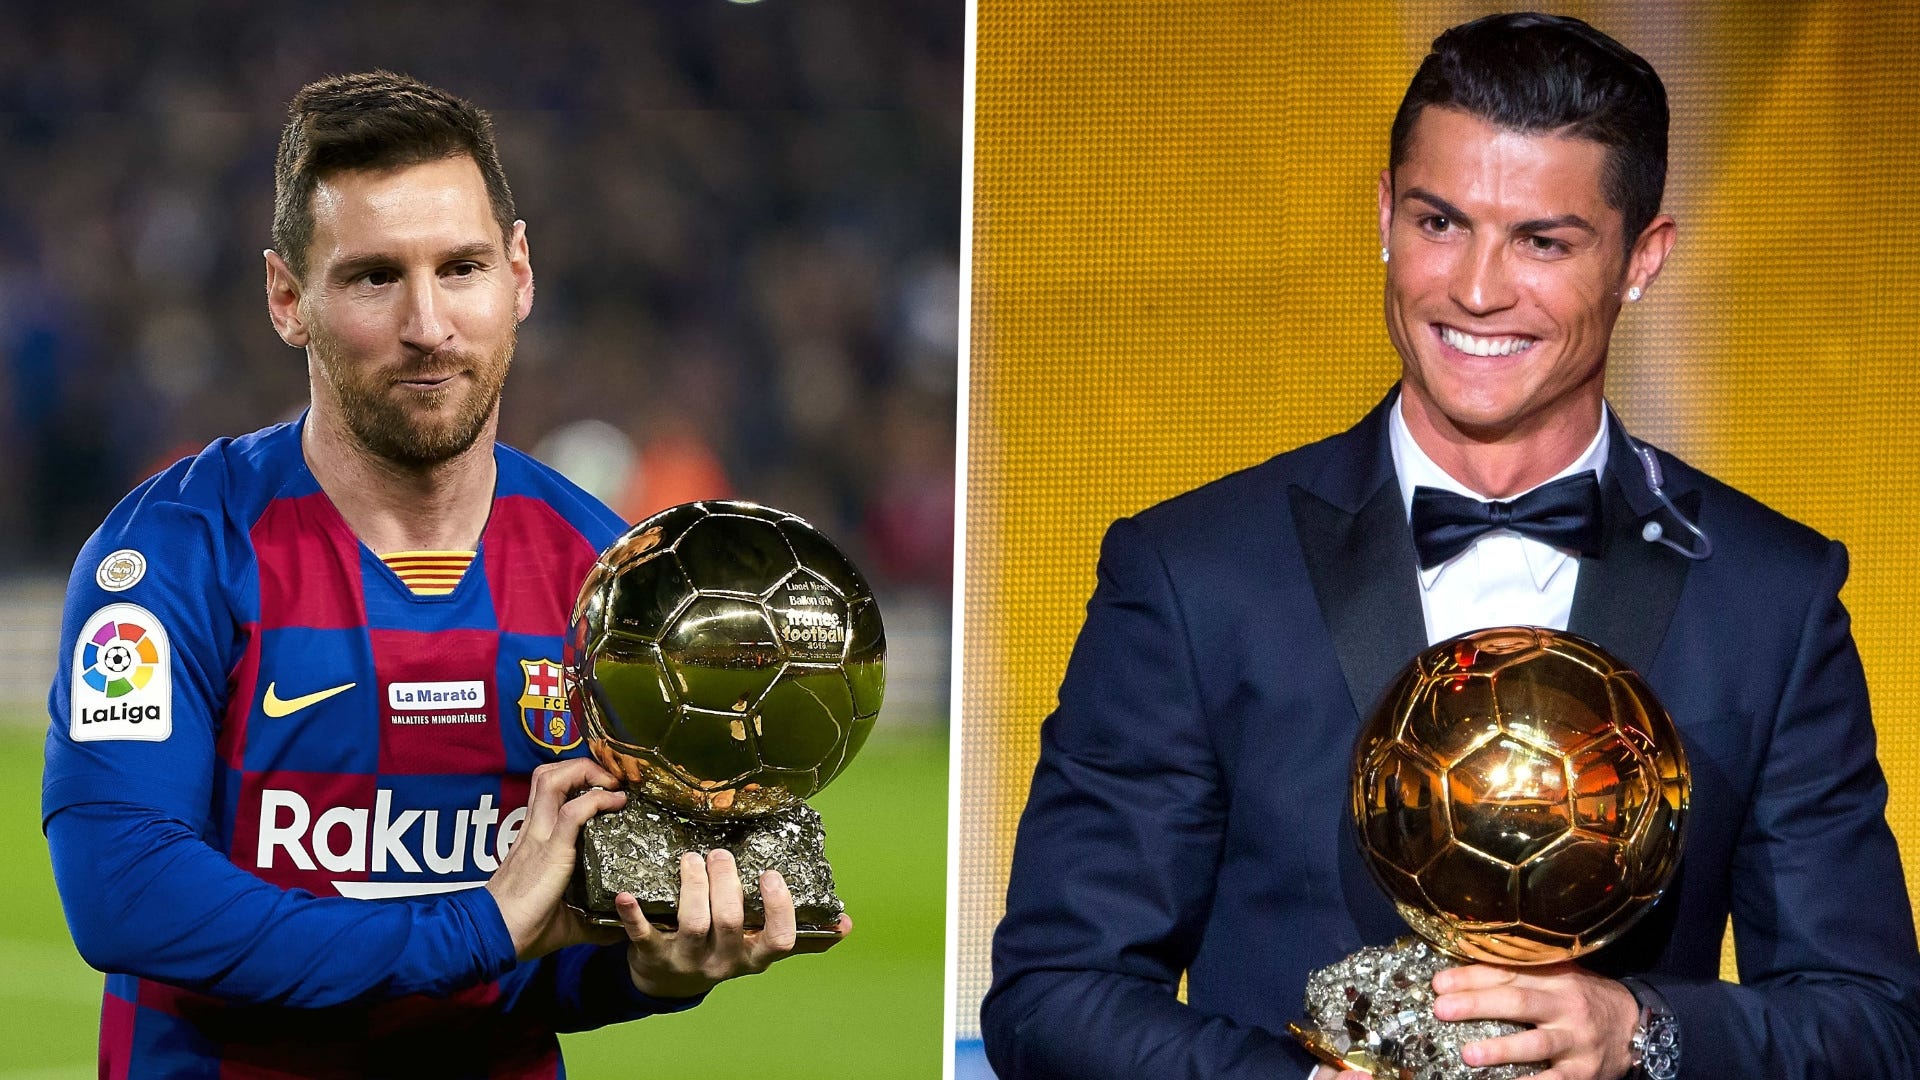 Quả bóng Vàng) Ở vũ trụ không có Messi và Ronaldo, ai sẽ là người chiến thắng? | Goal.com